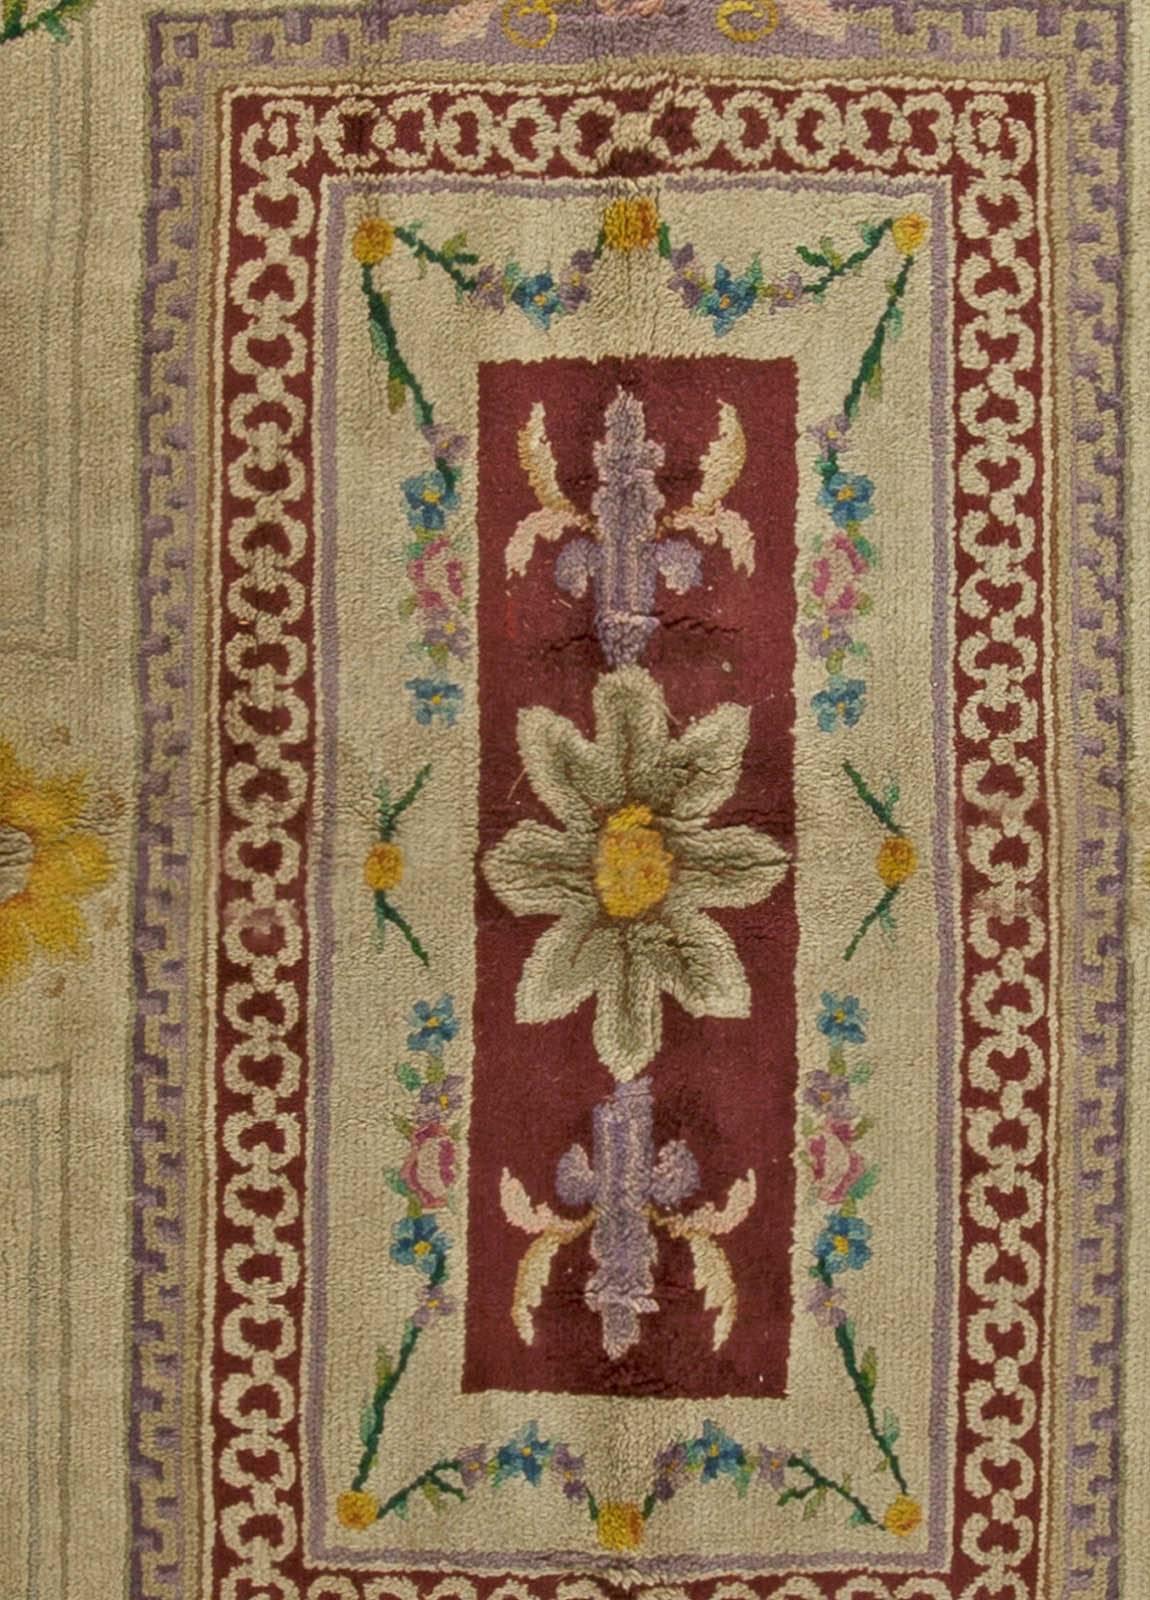 Vintage Spanish Savonnerie botanique tapis en laine fait main (taille ajustée).
Taille : 13'5